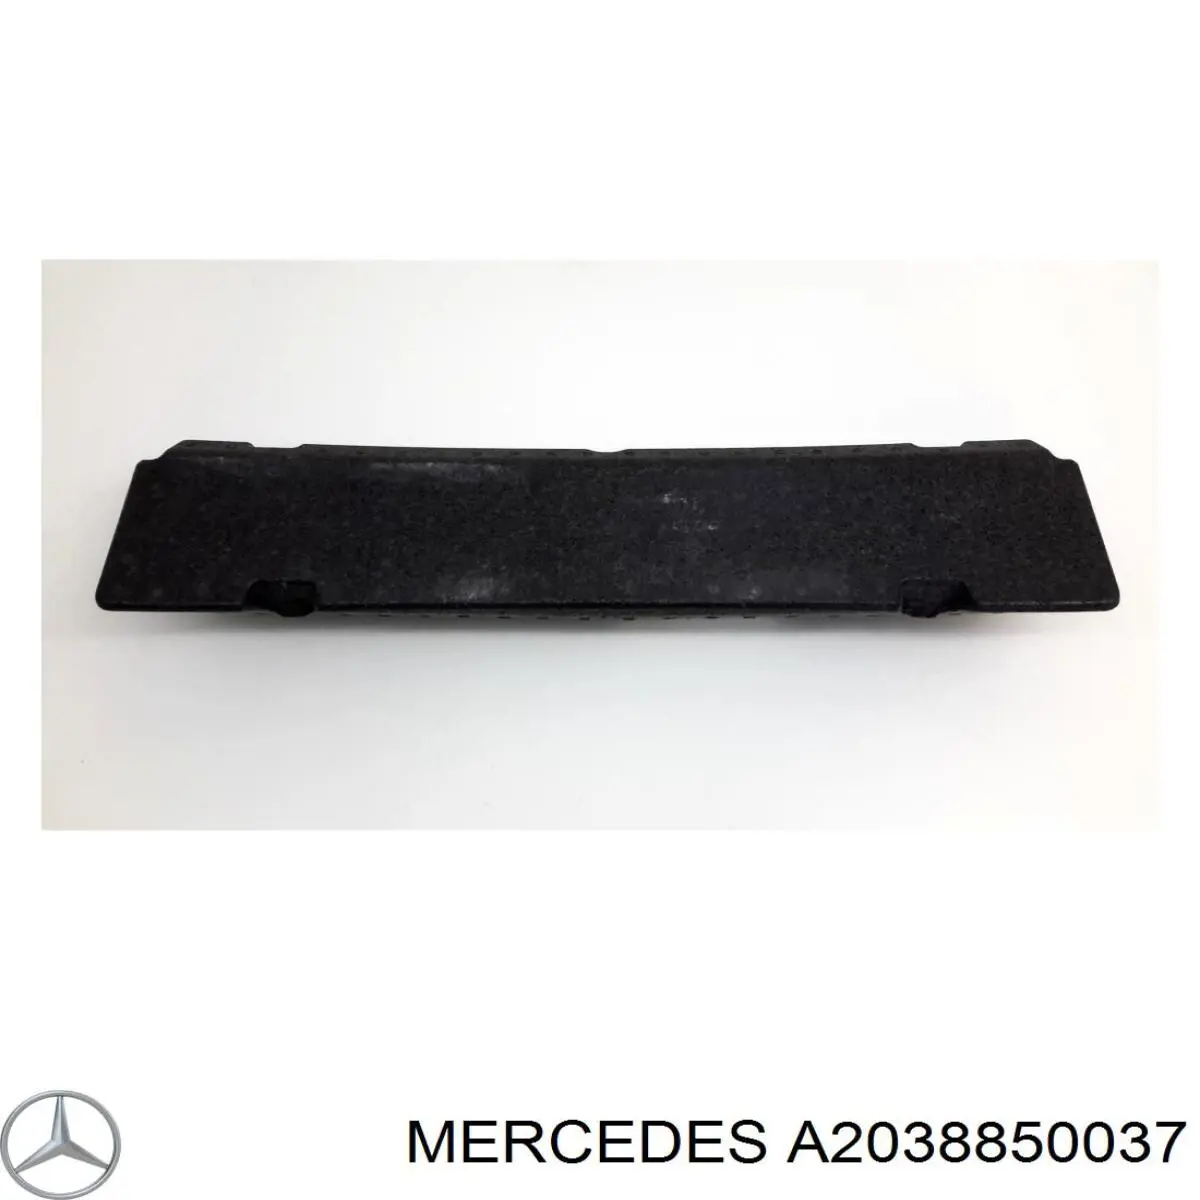 A2038850037 Mercedes absorbente parachoques delantero